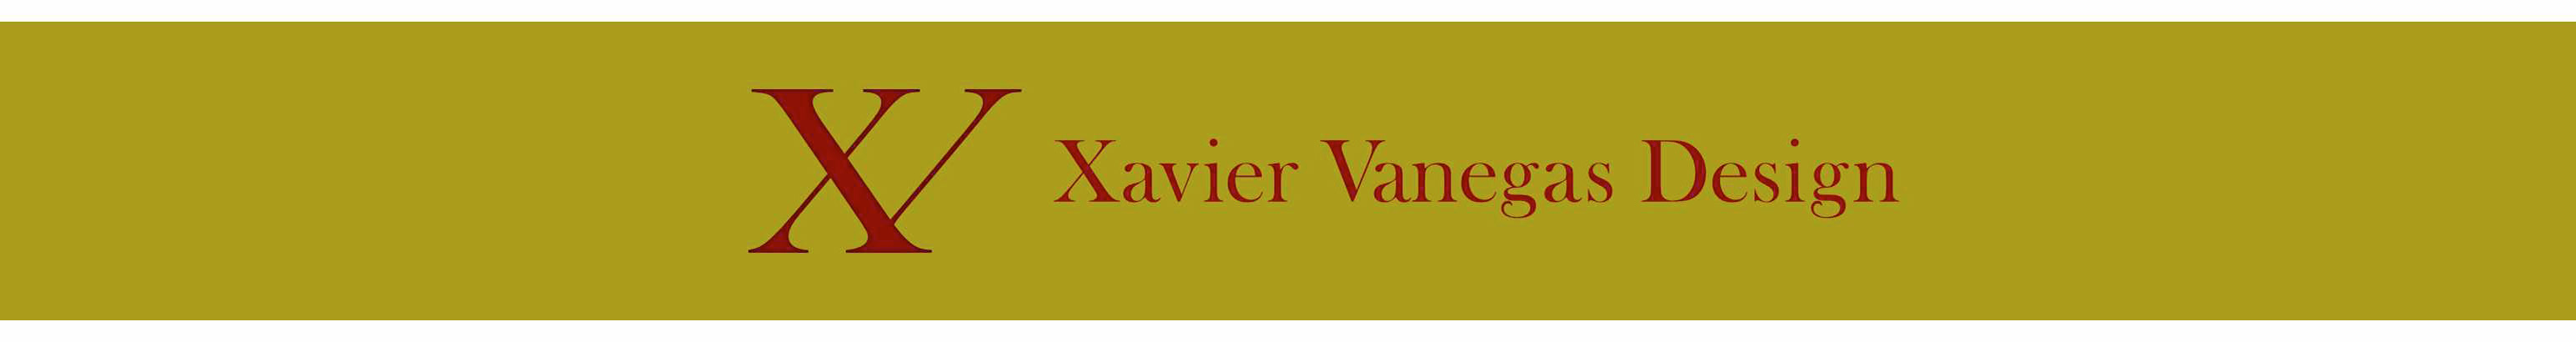 Profil-Banner von Xavier Vanegas